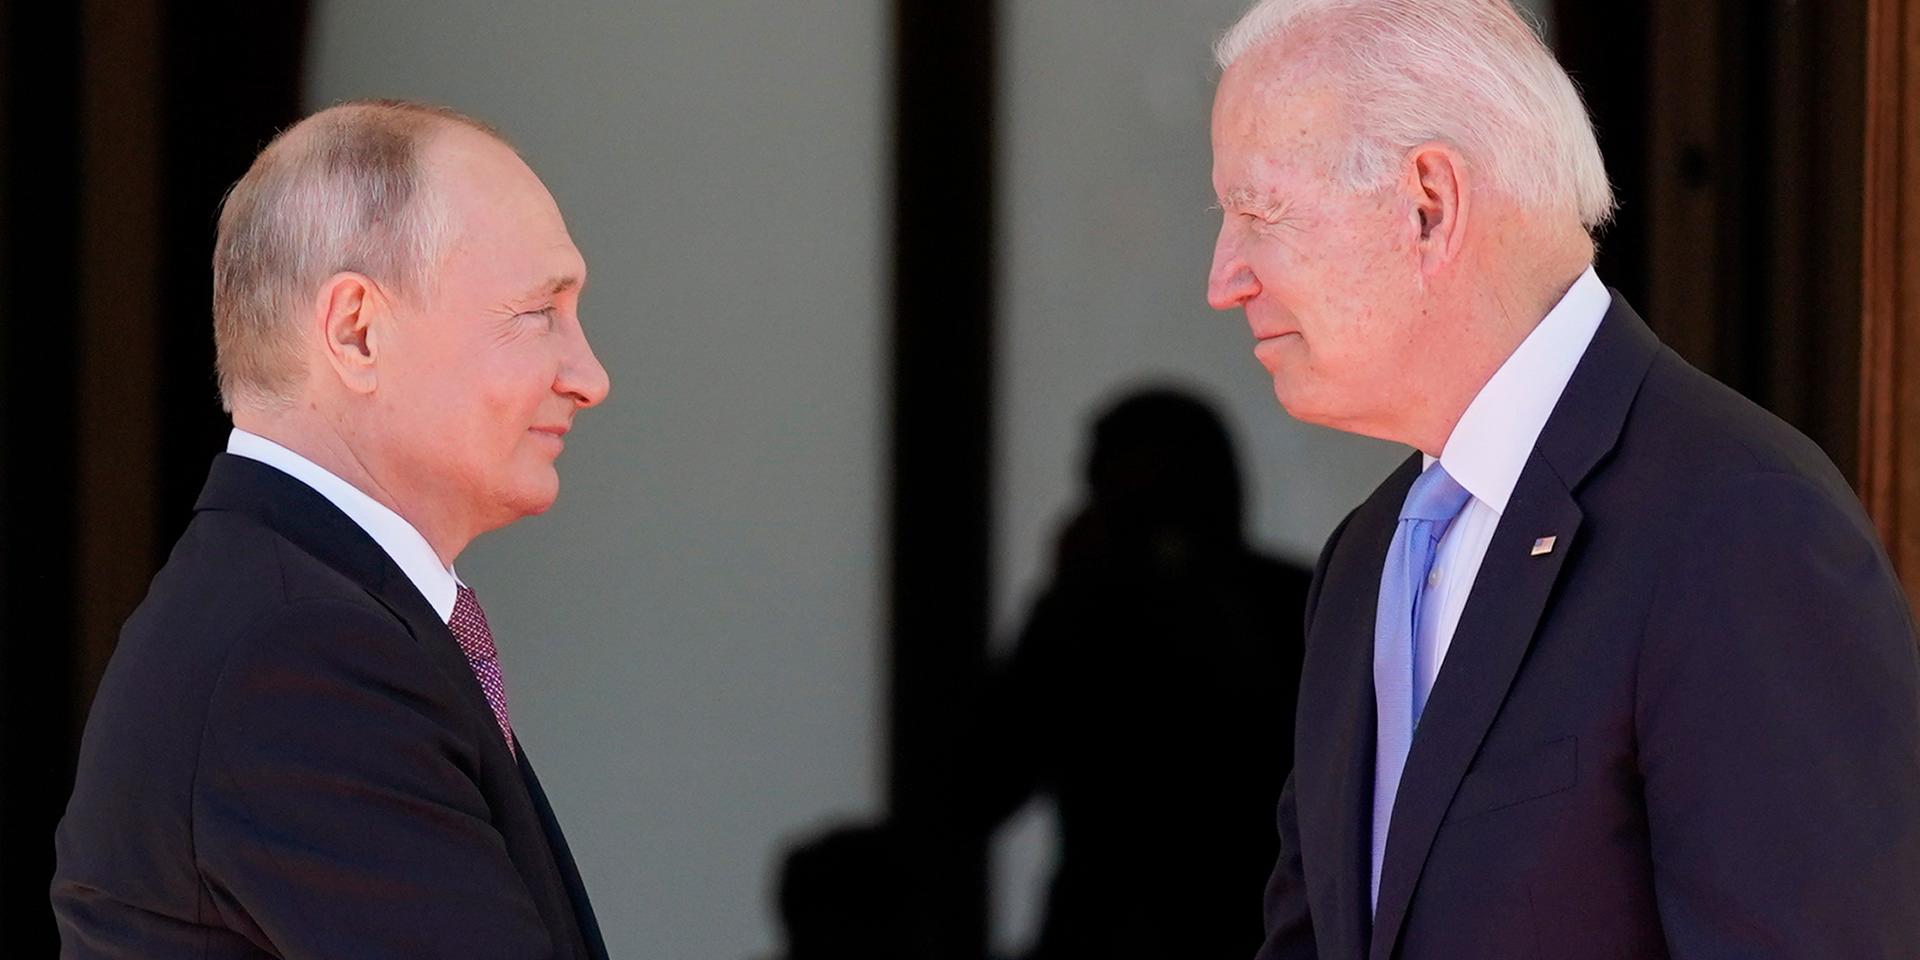 Presidenterna Vladimir Putin och Joe Biden i ett spänt toppmöte i Schweiz i juni i år. I veckan stängde Ryssland sin Nato-delegation i Bryssel och ett Natokontor i Moskva. Det var ett svar på att försvarsalliansen uteslutit åtta personer i den ryska delegationen för att vara underrättelseofficerare. Det är senaste tecknet på de frusna relationerna mellan Ryssland och väst.